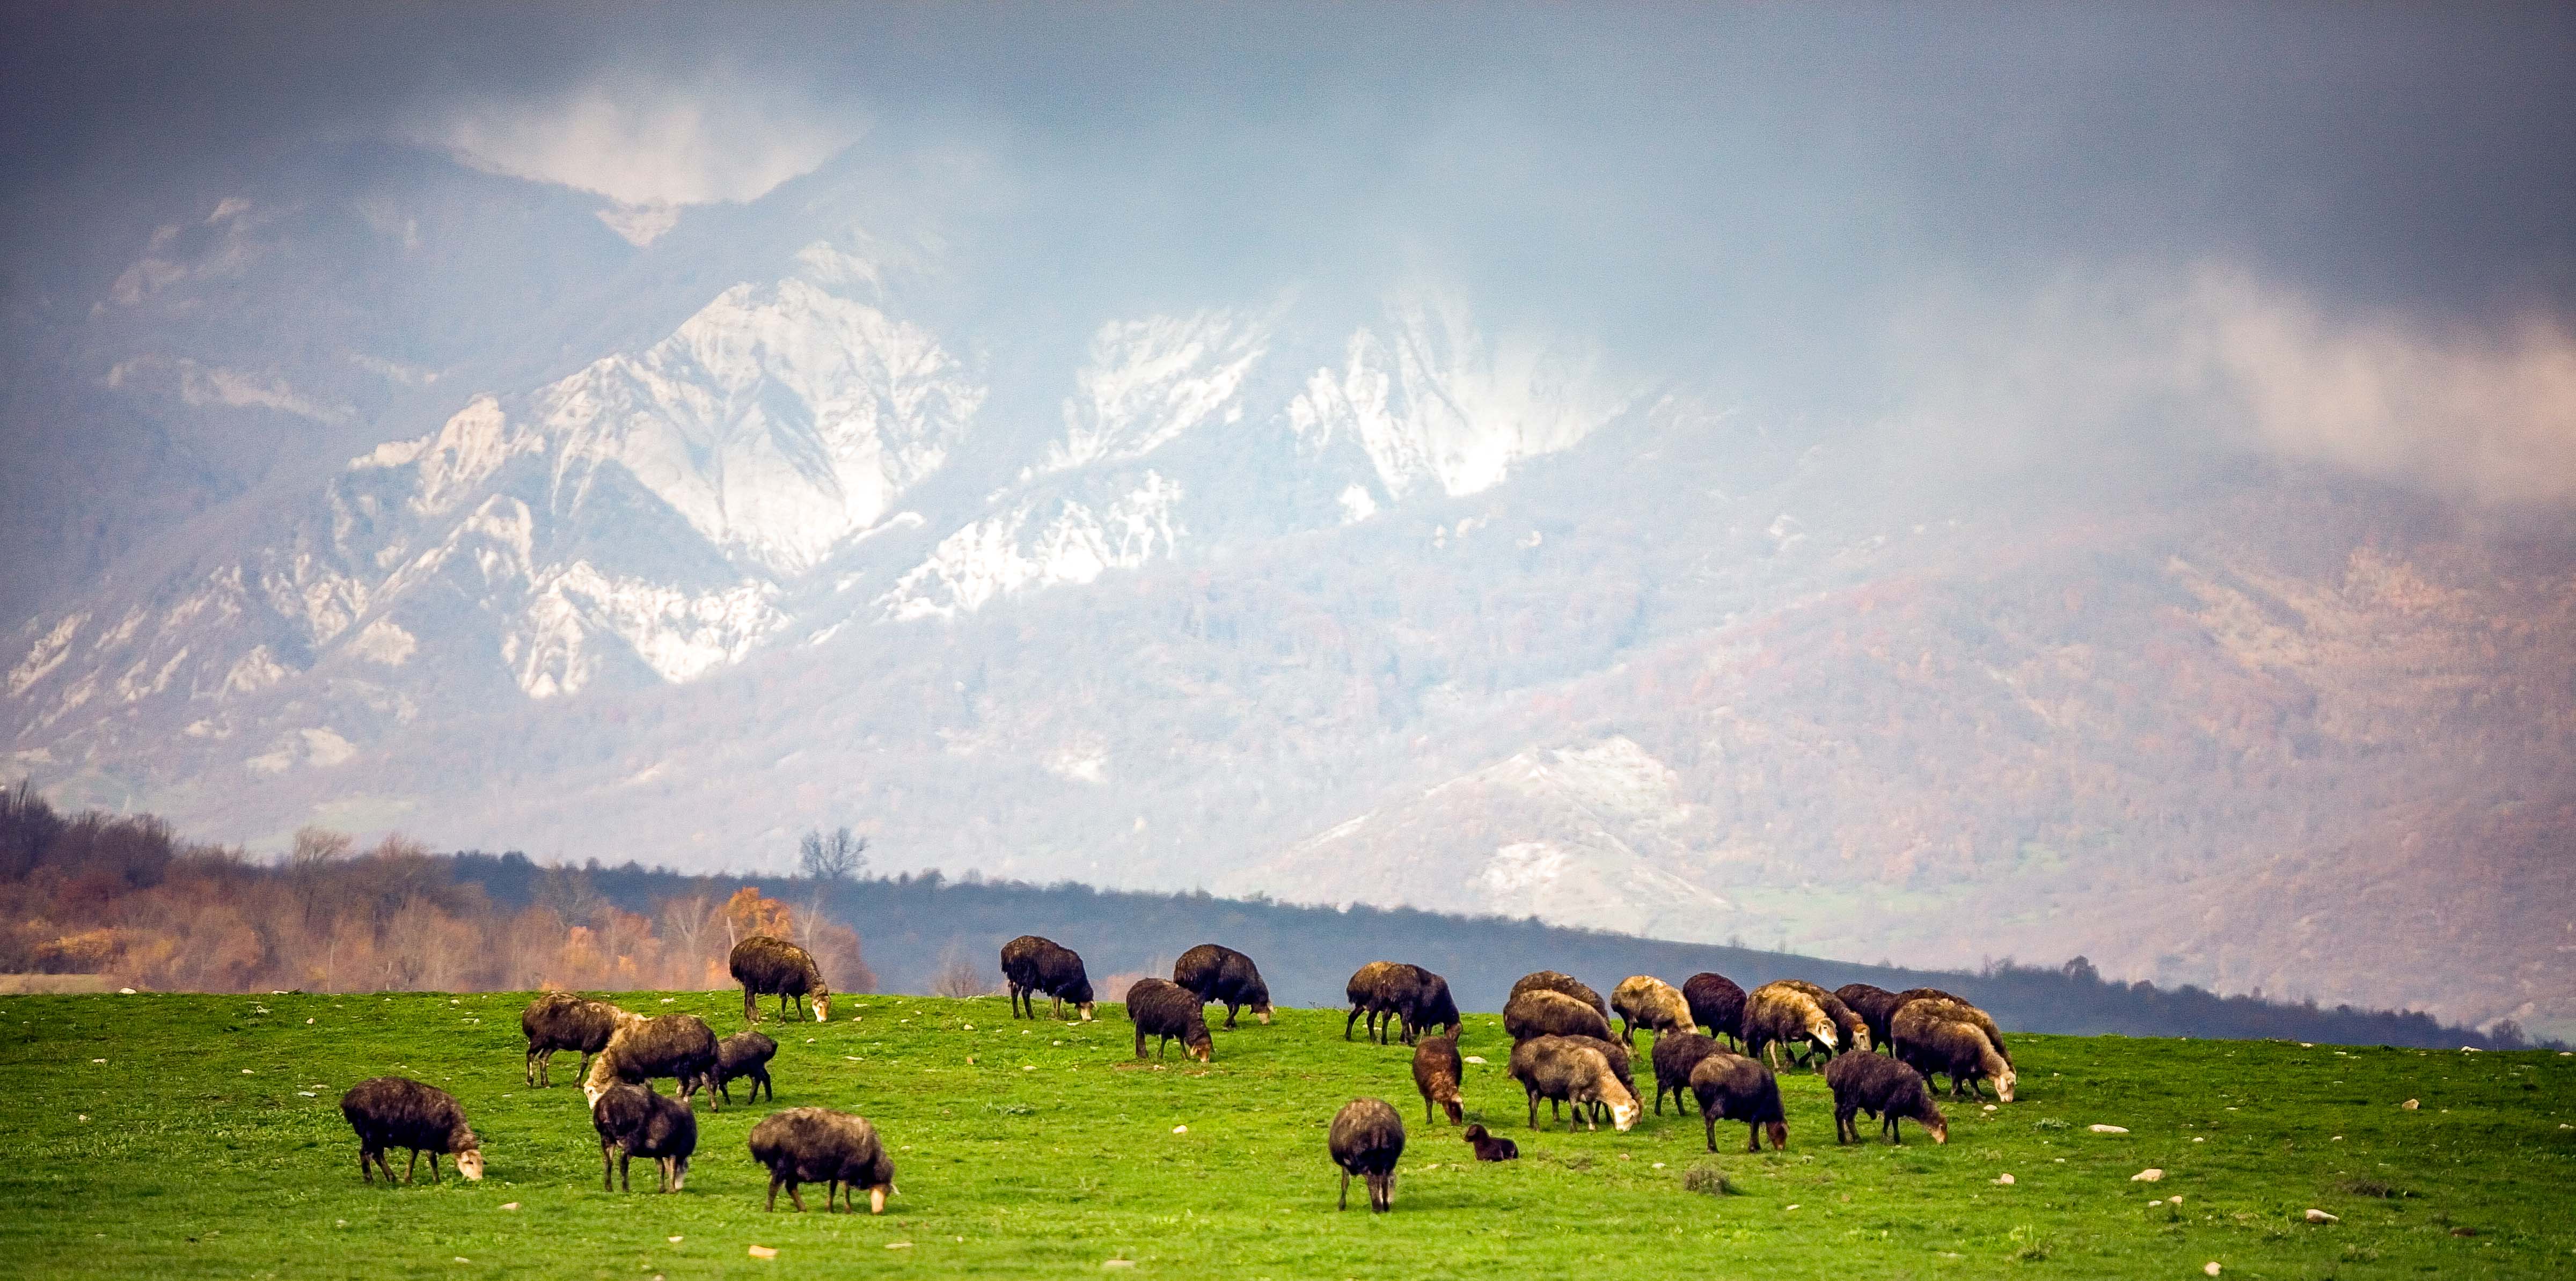 Azerbaijan, Ismayilli Prov, Sheep And Mountains, 2009, IMG 8097